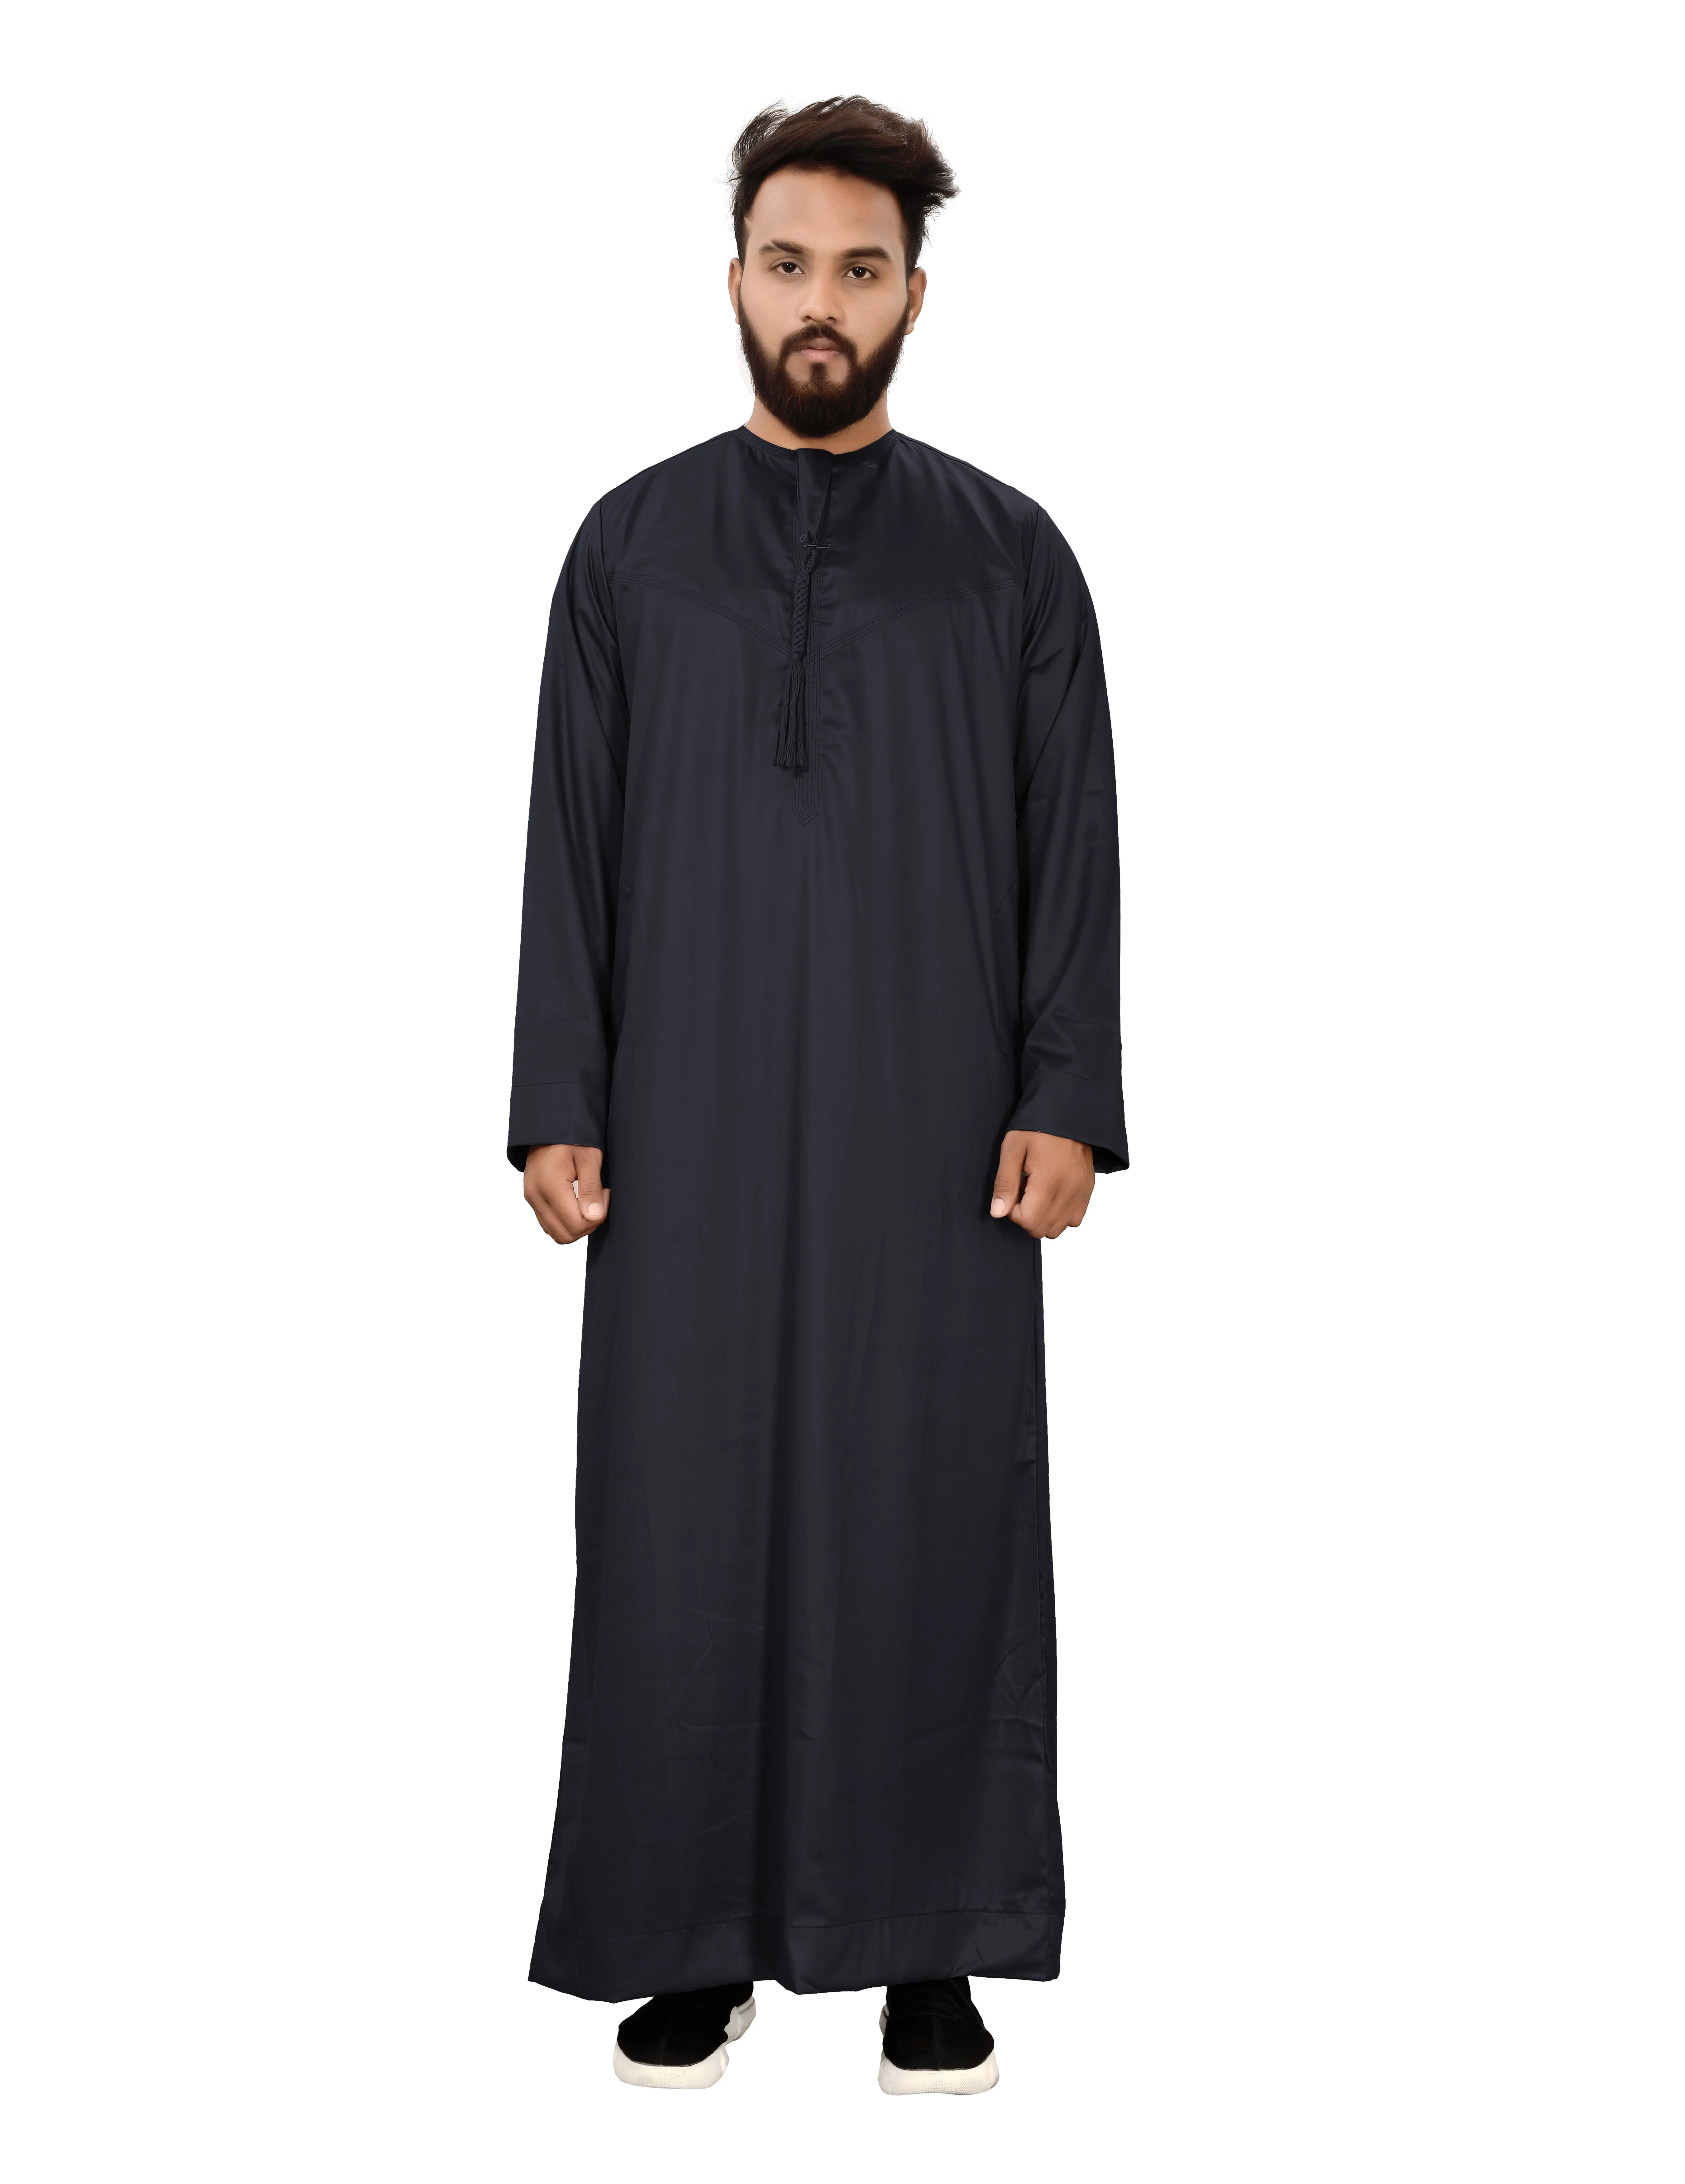 メンズサウジトーベローブイスラムイスラム教徒ジュバアラビア語カフタンアバヤドレス